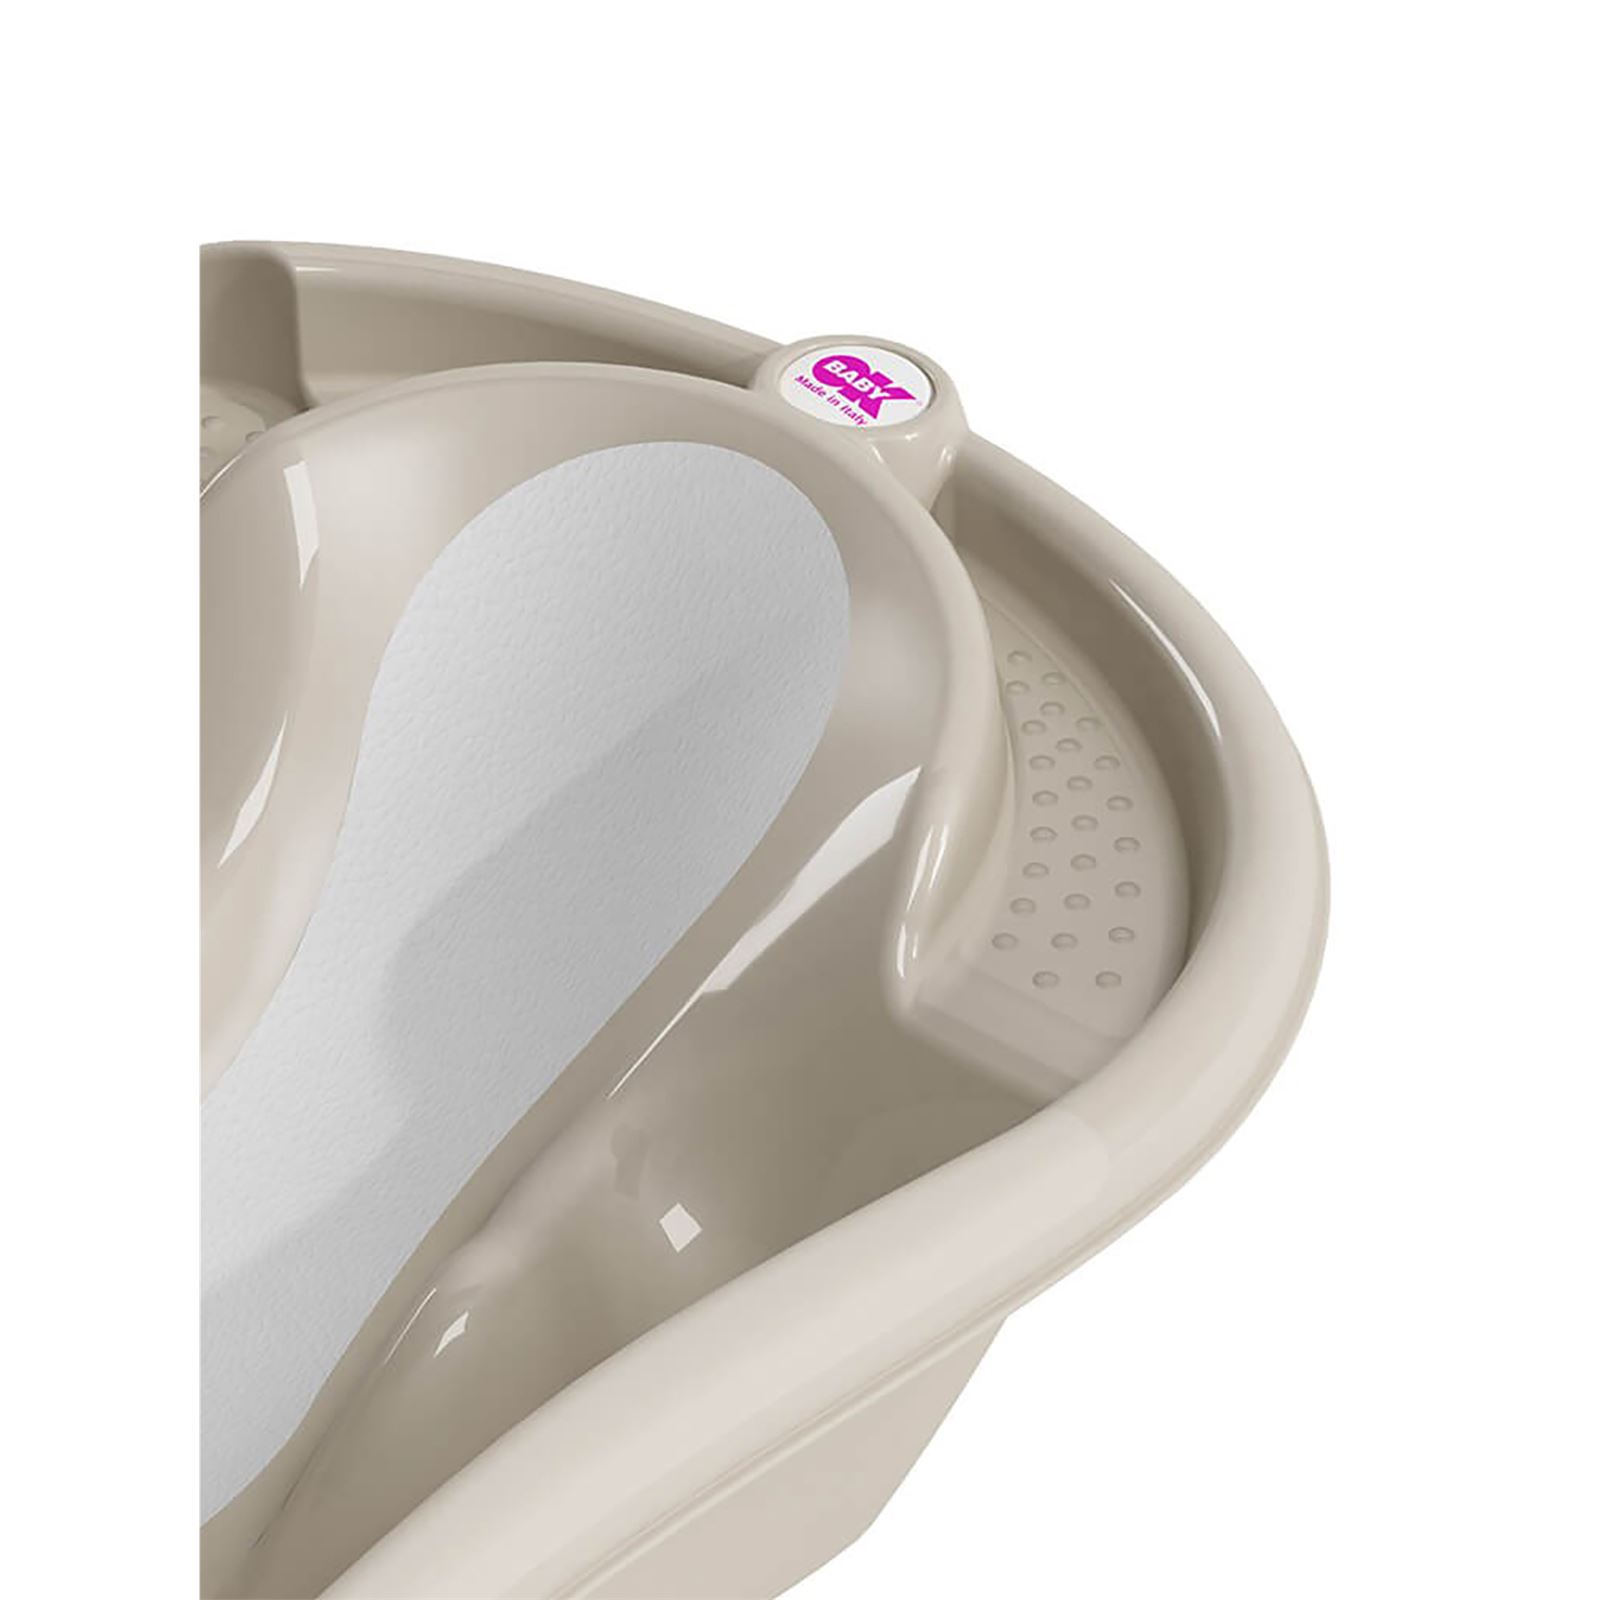 OkBaby Onda Evol Banyo Küveti & Banyo Küvet Taşıyıcı / Gri